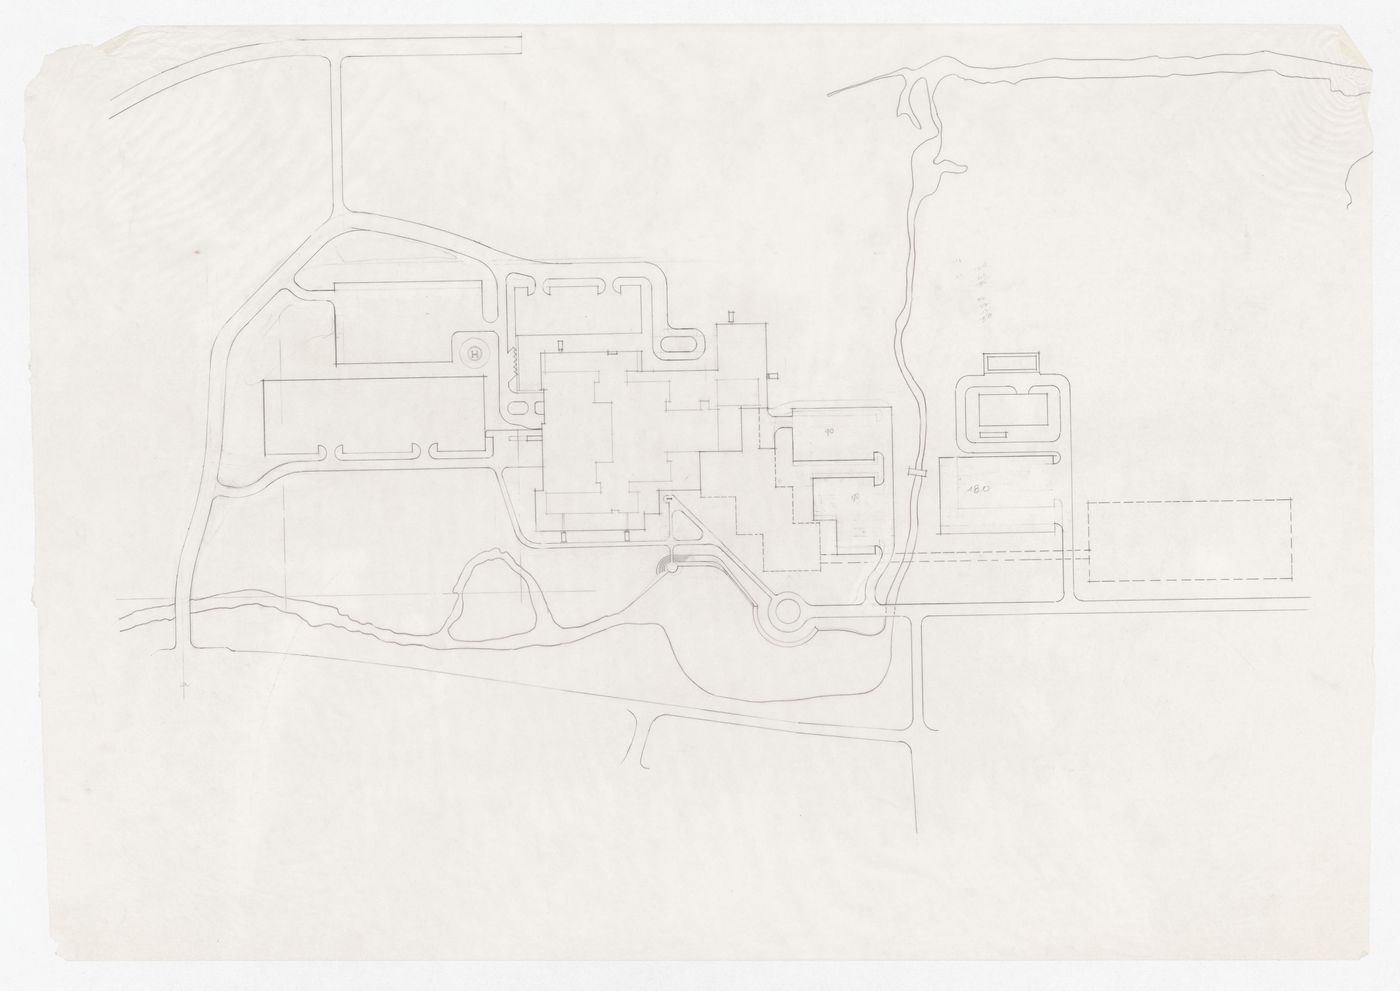 Sketch site plan for Memorial University of Newfoundland, Health Sciences Complex, St. Johns, Newfoundland